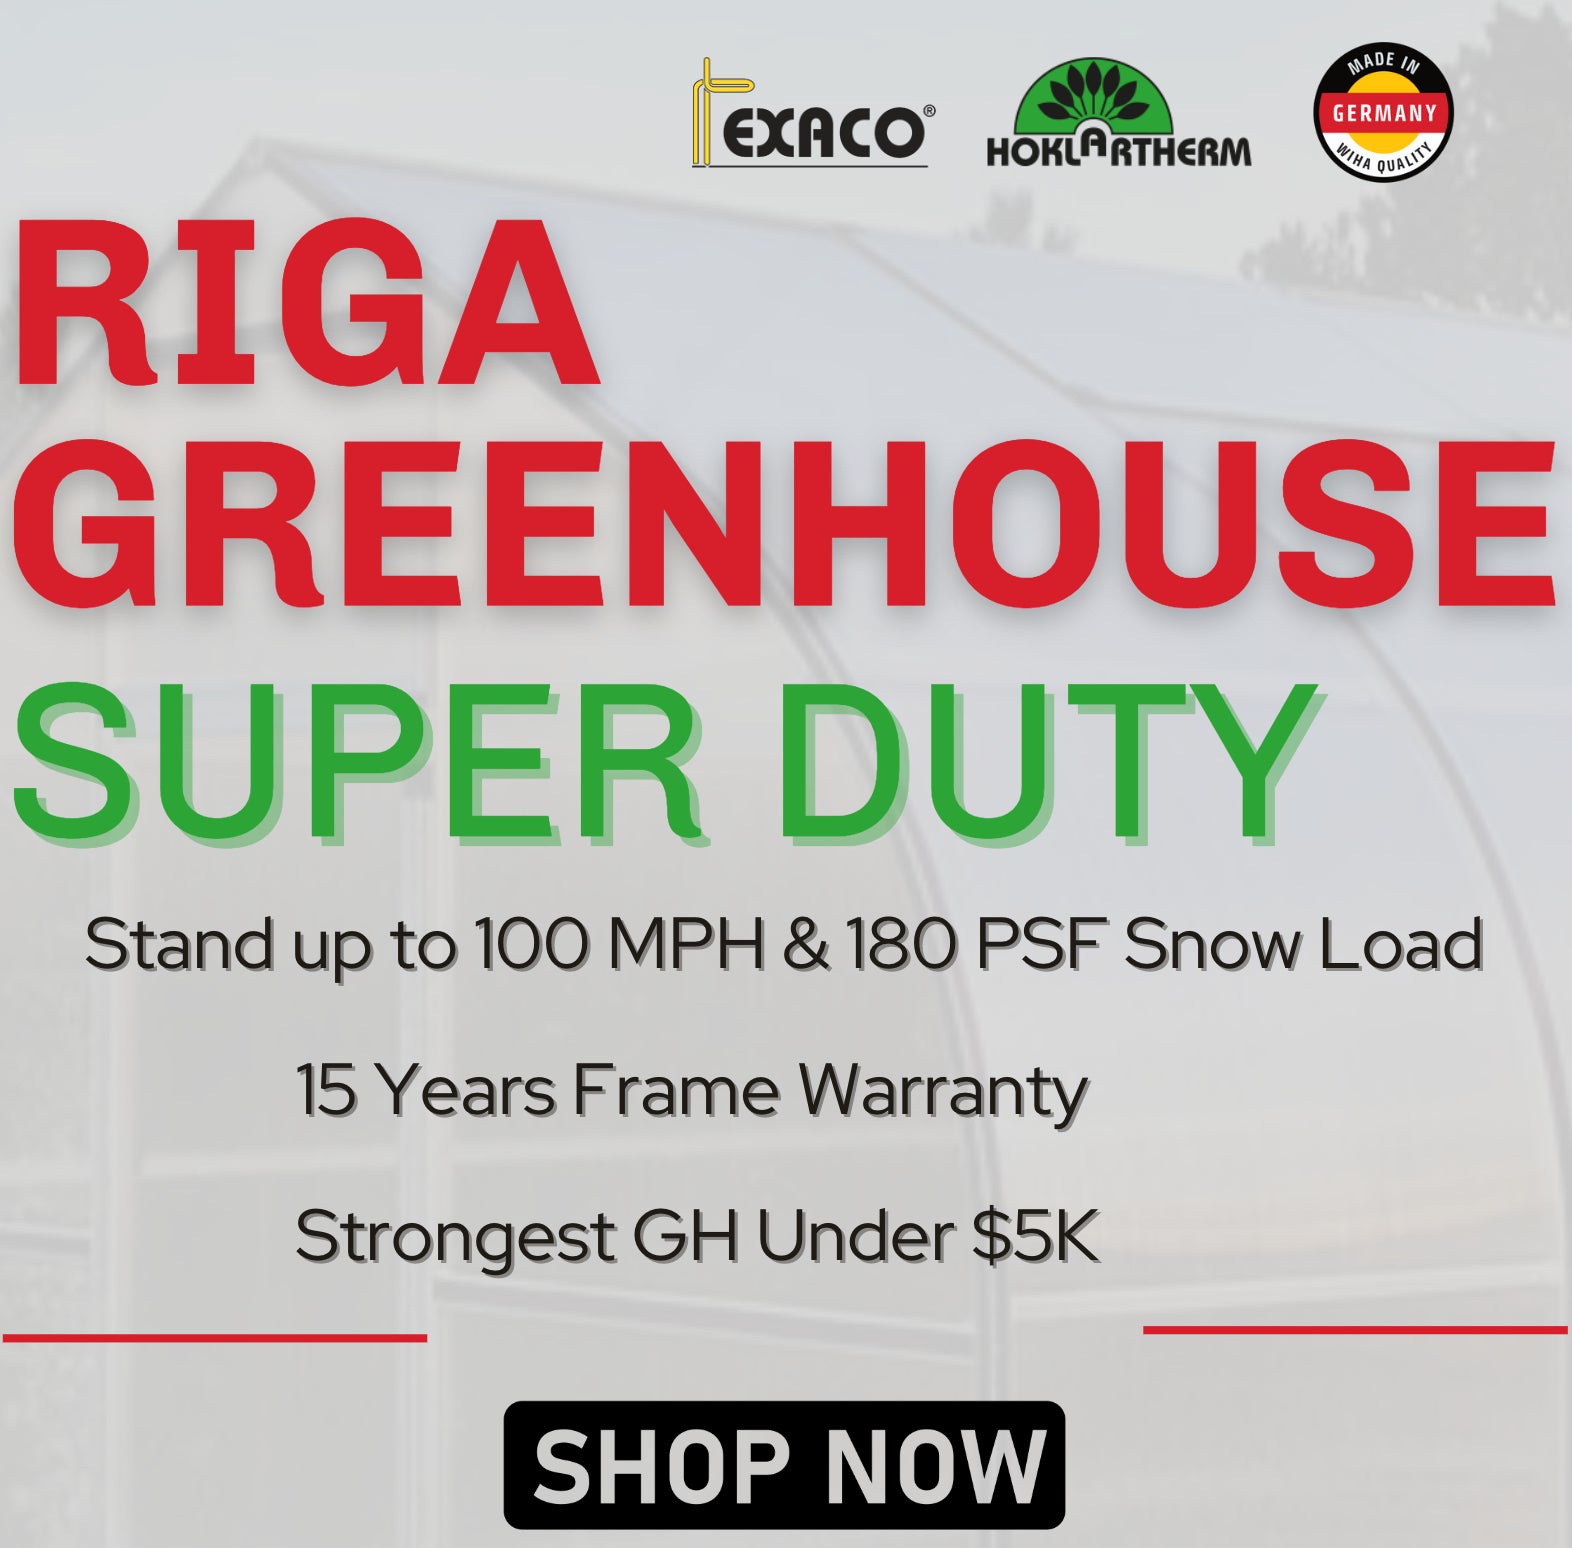 RIGA L Greenhouse - RIGA 4™ 10X7X14.ft Greenhouse/Special Kit